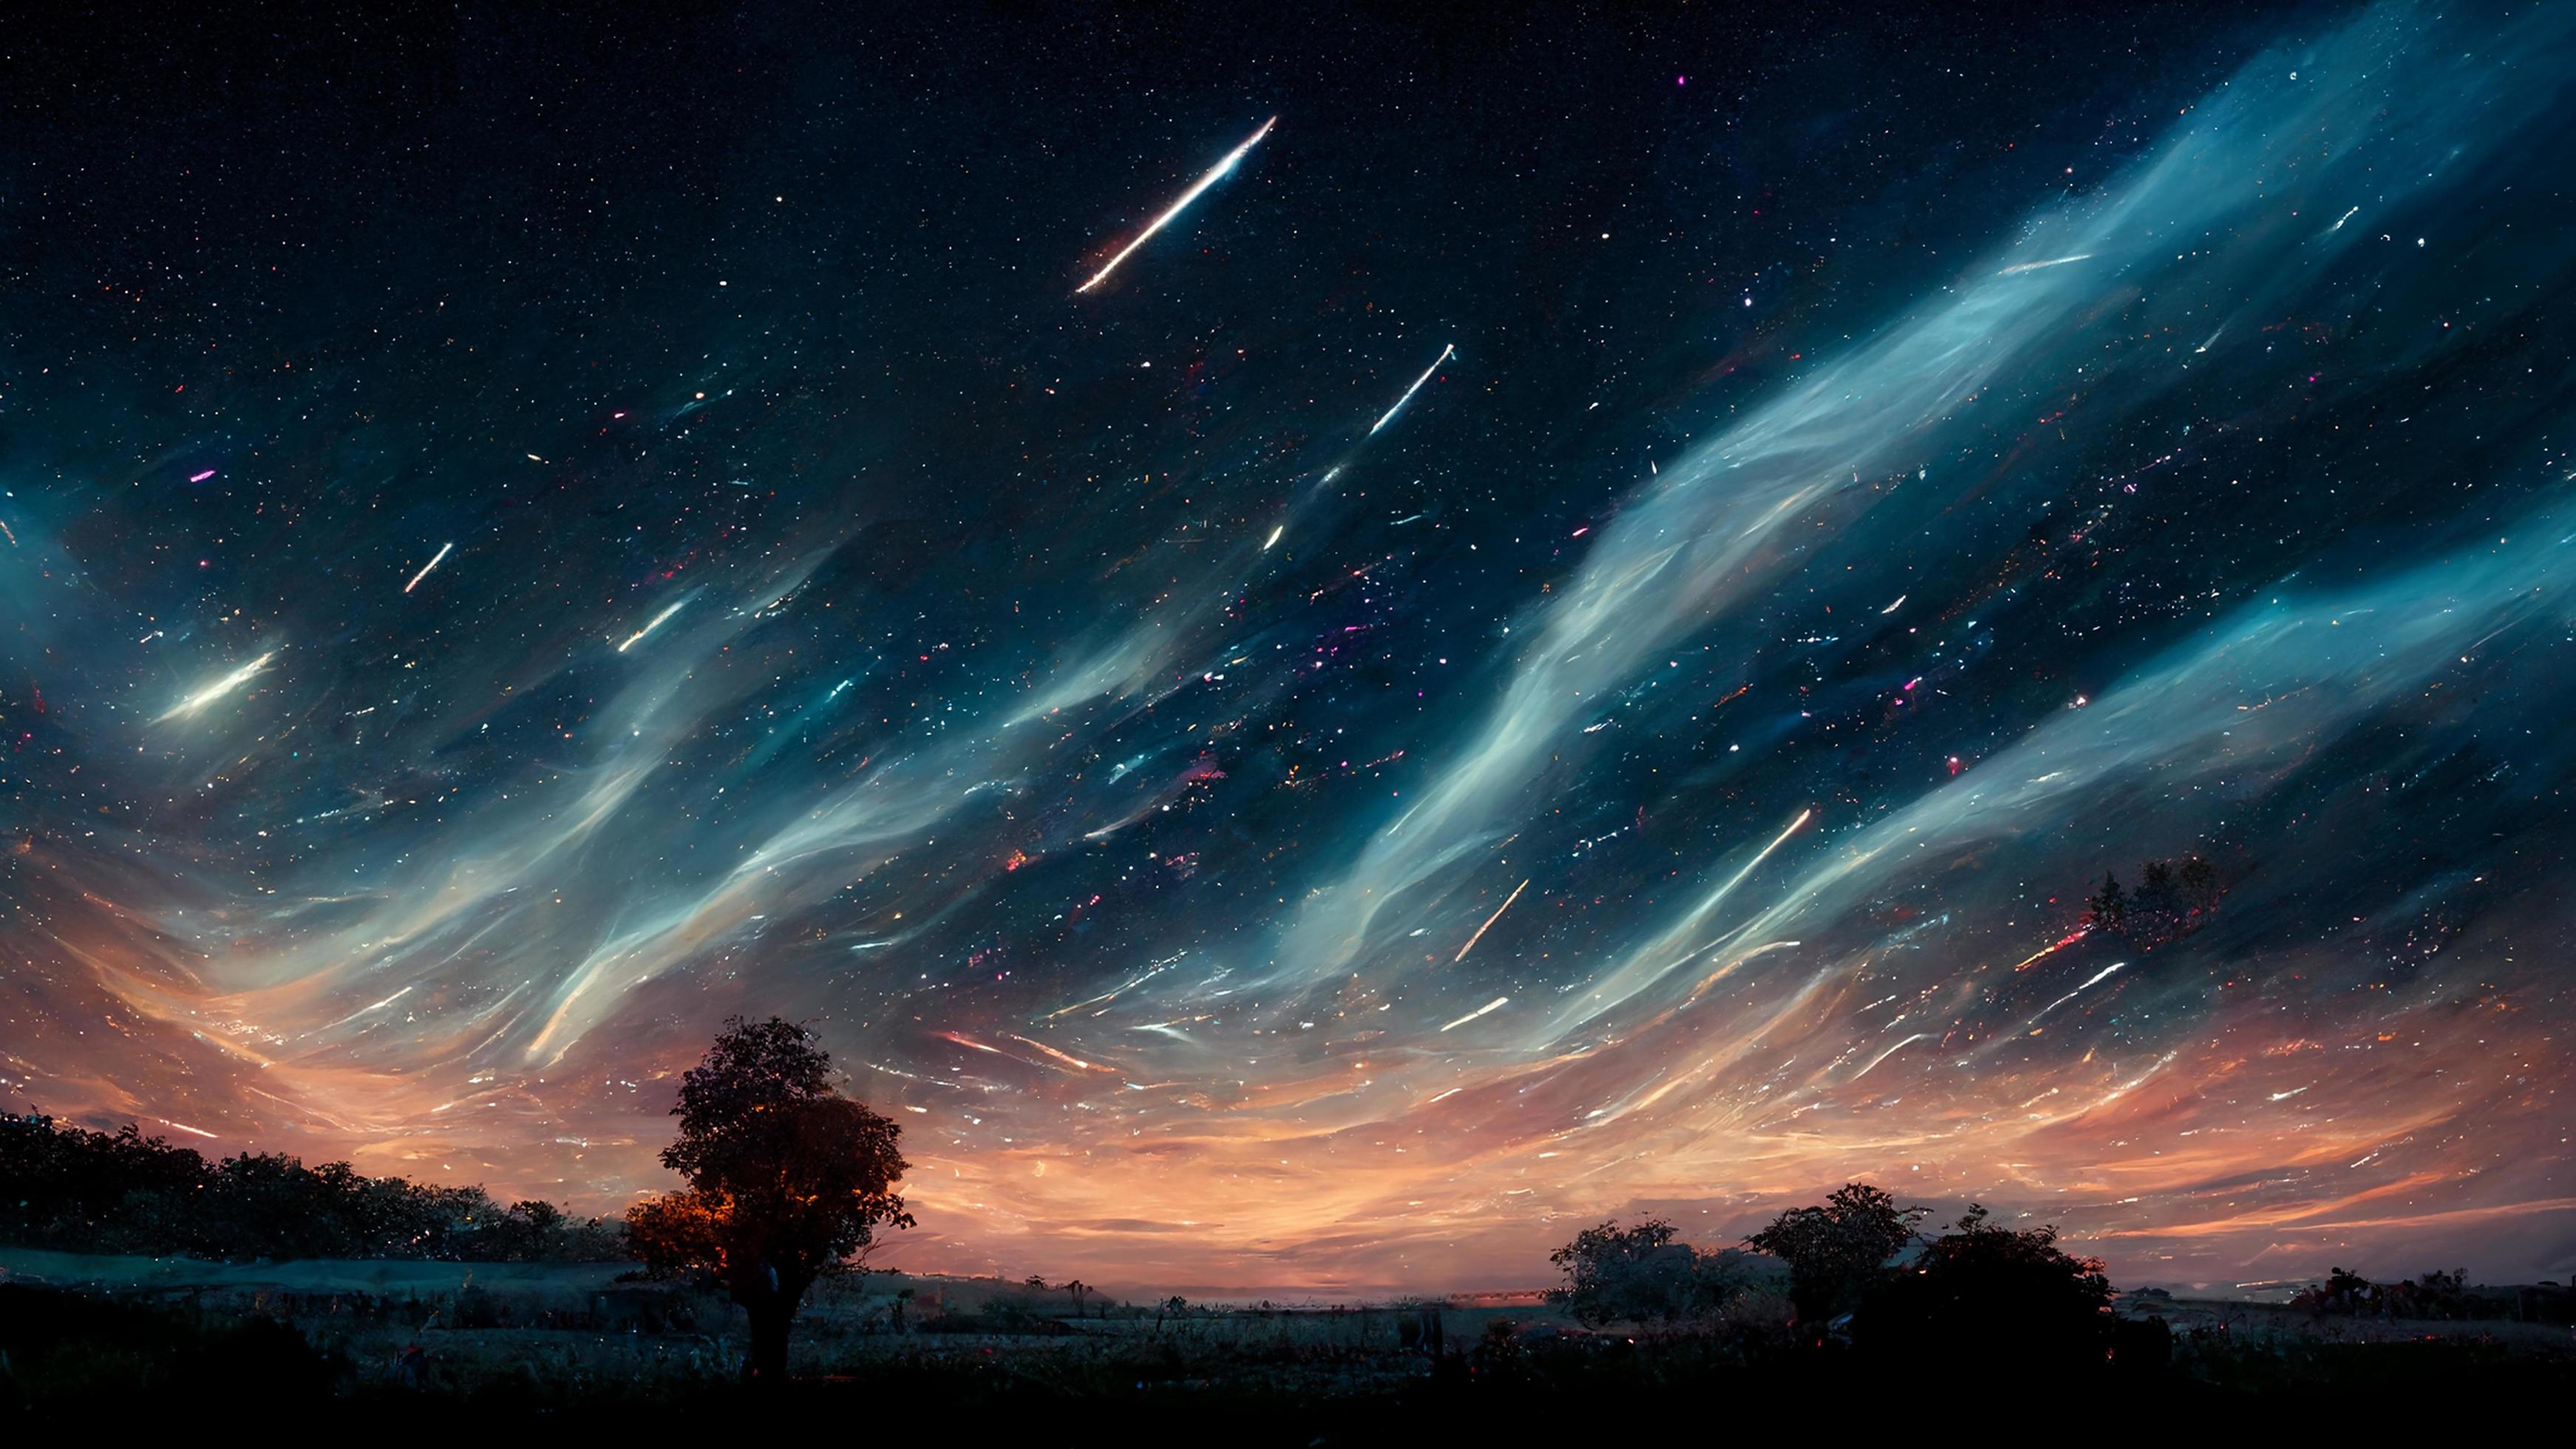 Hình nền sao băng và ánh sáng phân cảnh đêm trừu tượng là một tài liệu tuyệt vời cho những người yêu thích thiên văn học và nghệ thuật. Những ánh sáng phân cảnh trên bầu trời đầy sao băng sẽ đem lại cho bạn cảm giác bình yên và lạc quan.